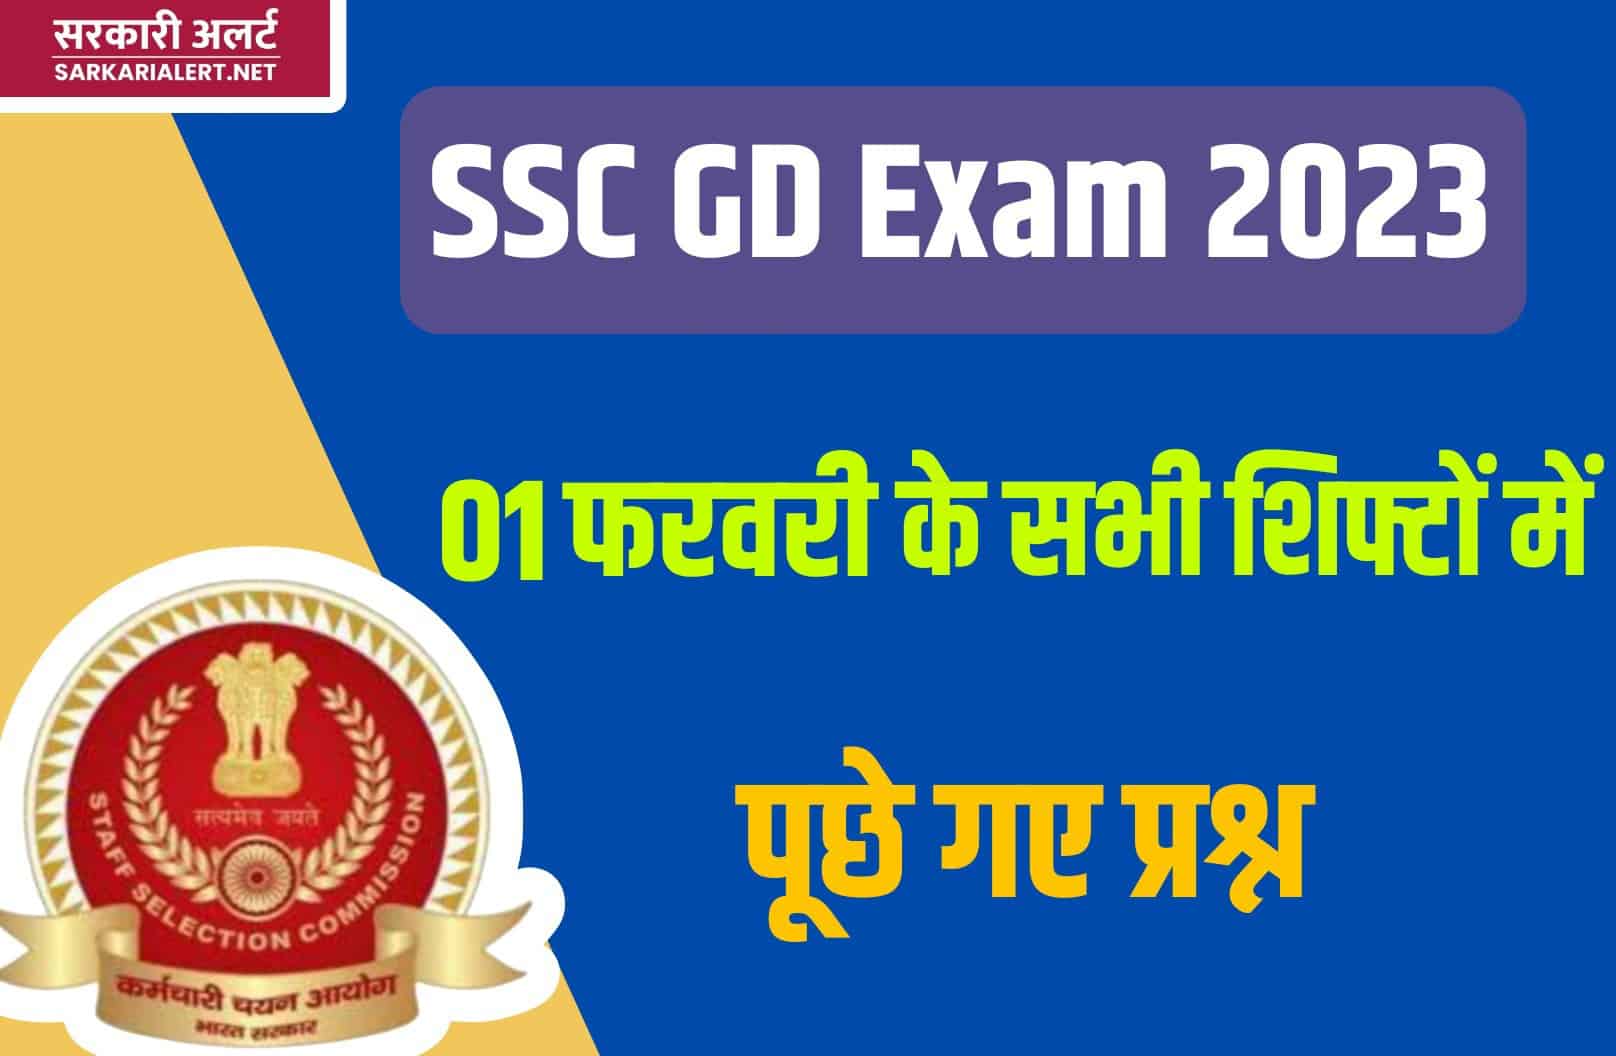 SSC GD Exam 2023 | 01 फरवरी परीक्षा के सभी शिफ्टों में पूछे गए मुख्य प्रश्नों का संग्रह